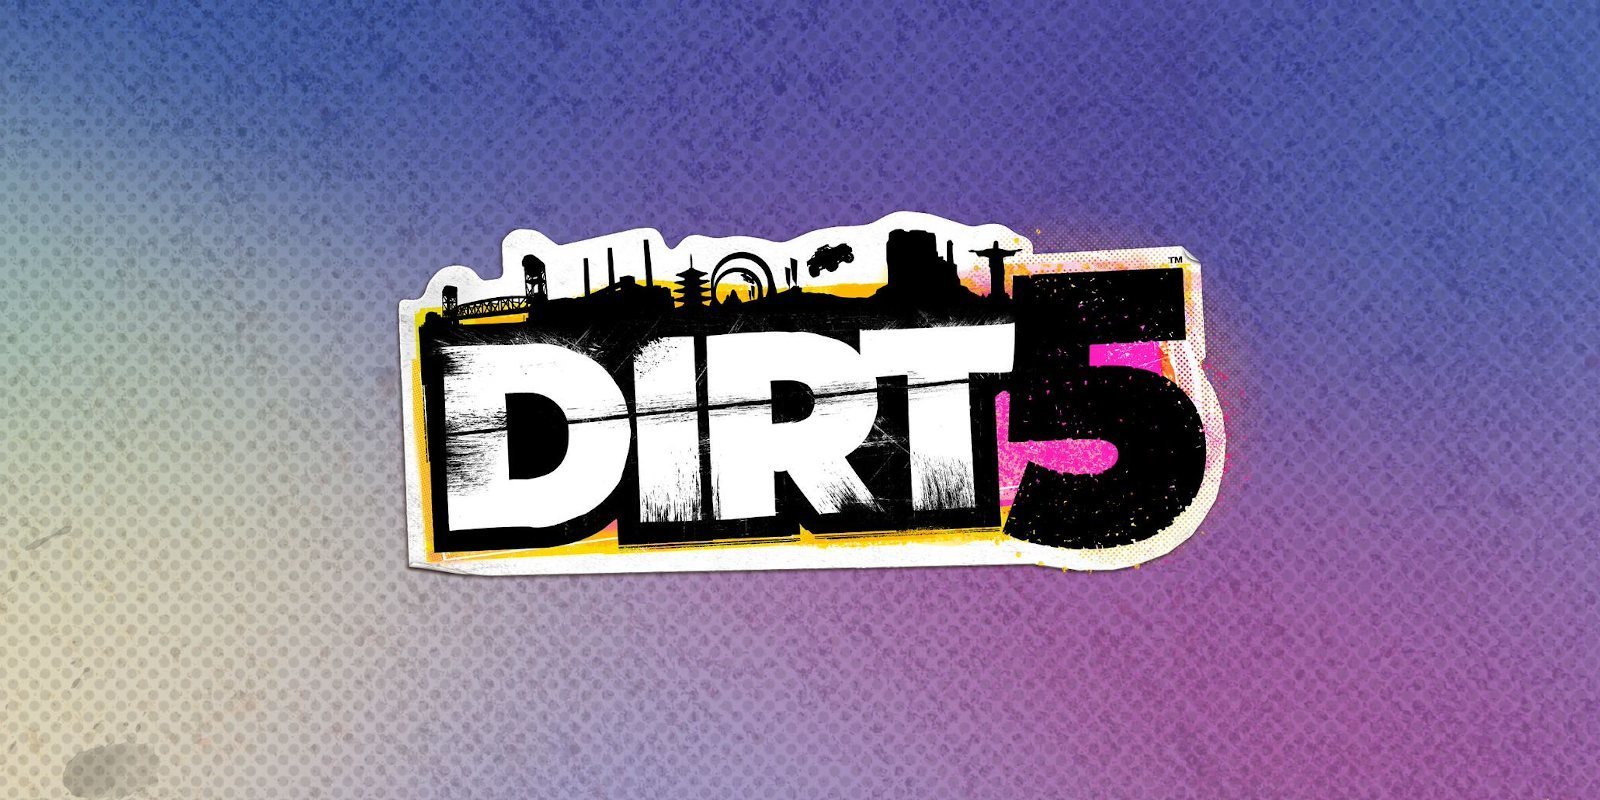 Preview de 'Dirt 5' y su nuevo modo de juego, Playgrounds